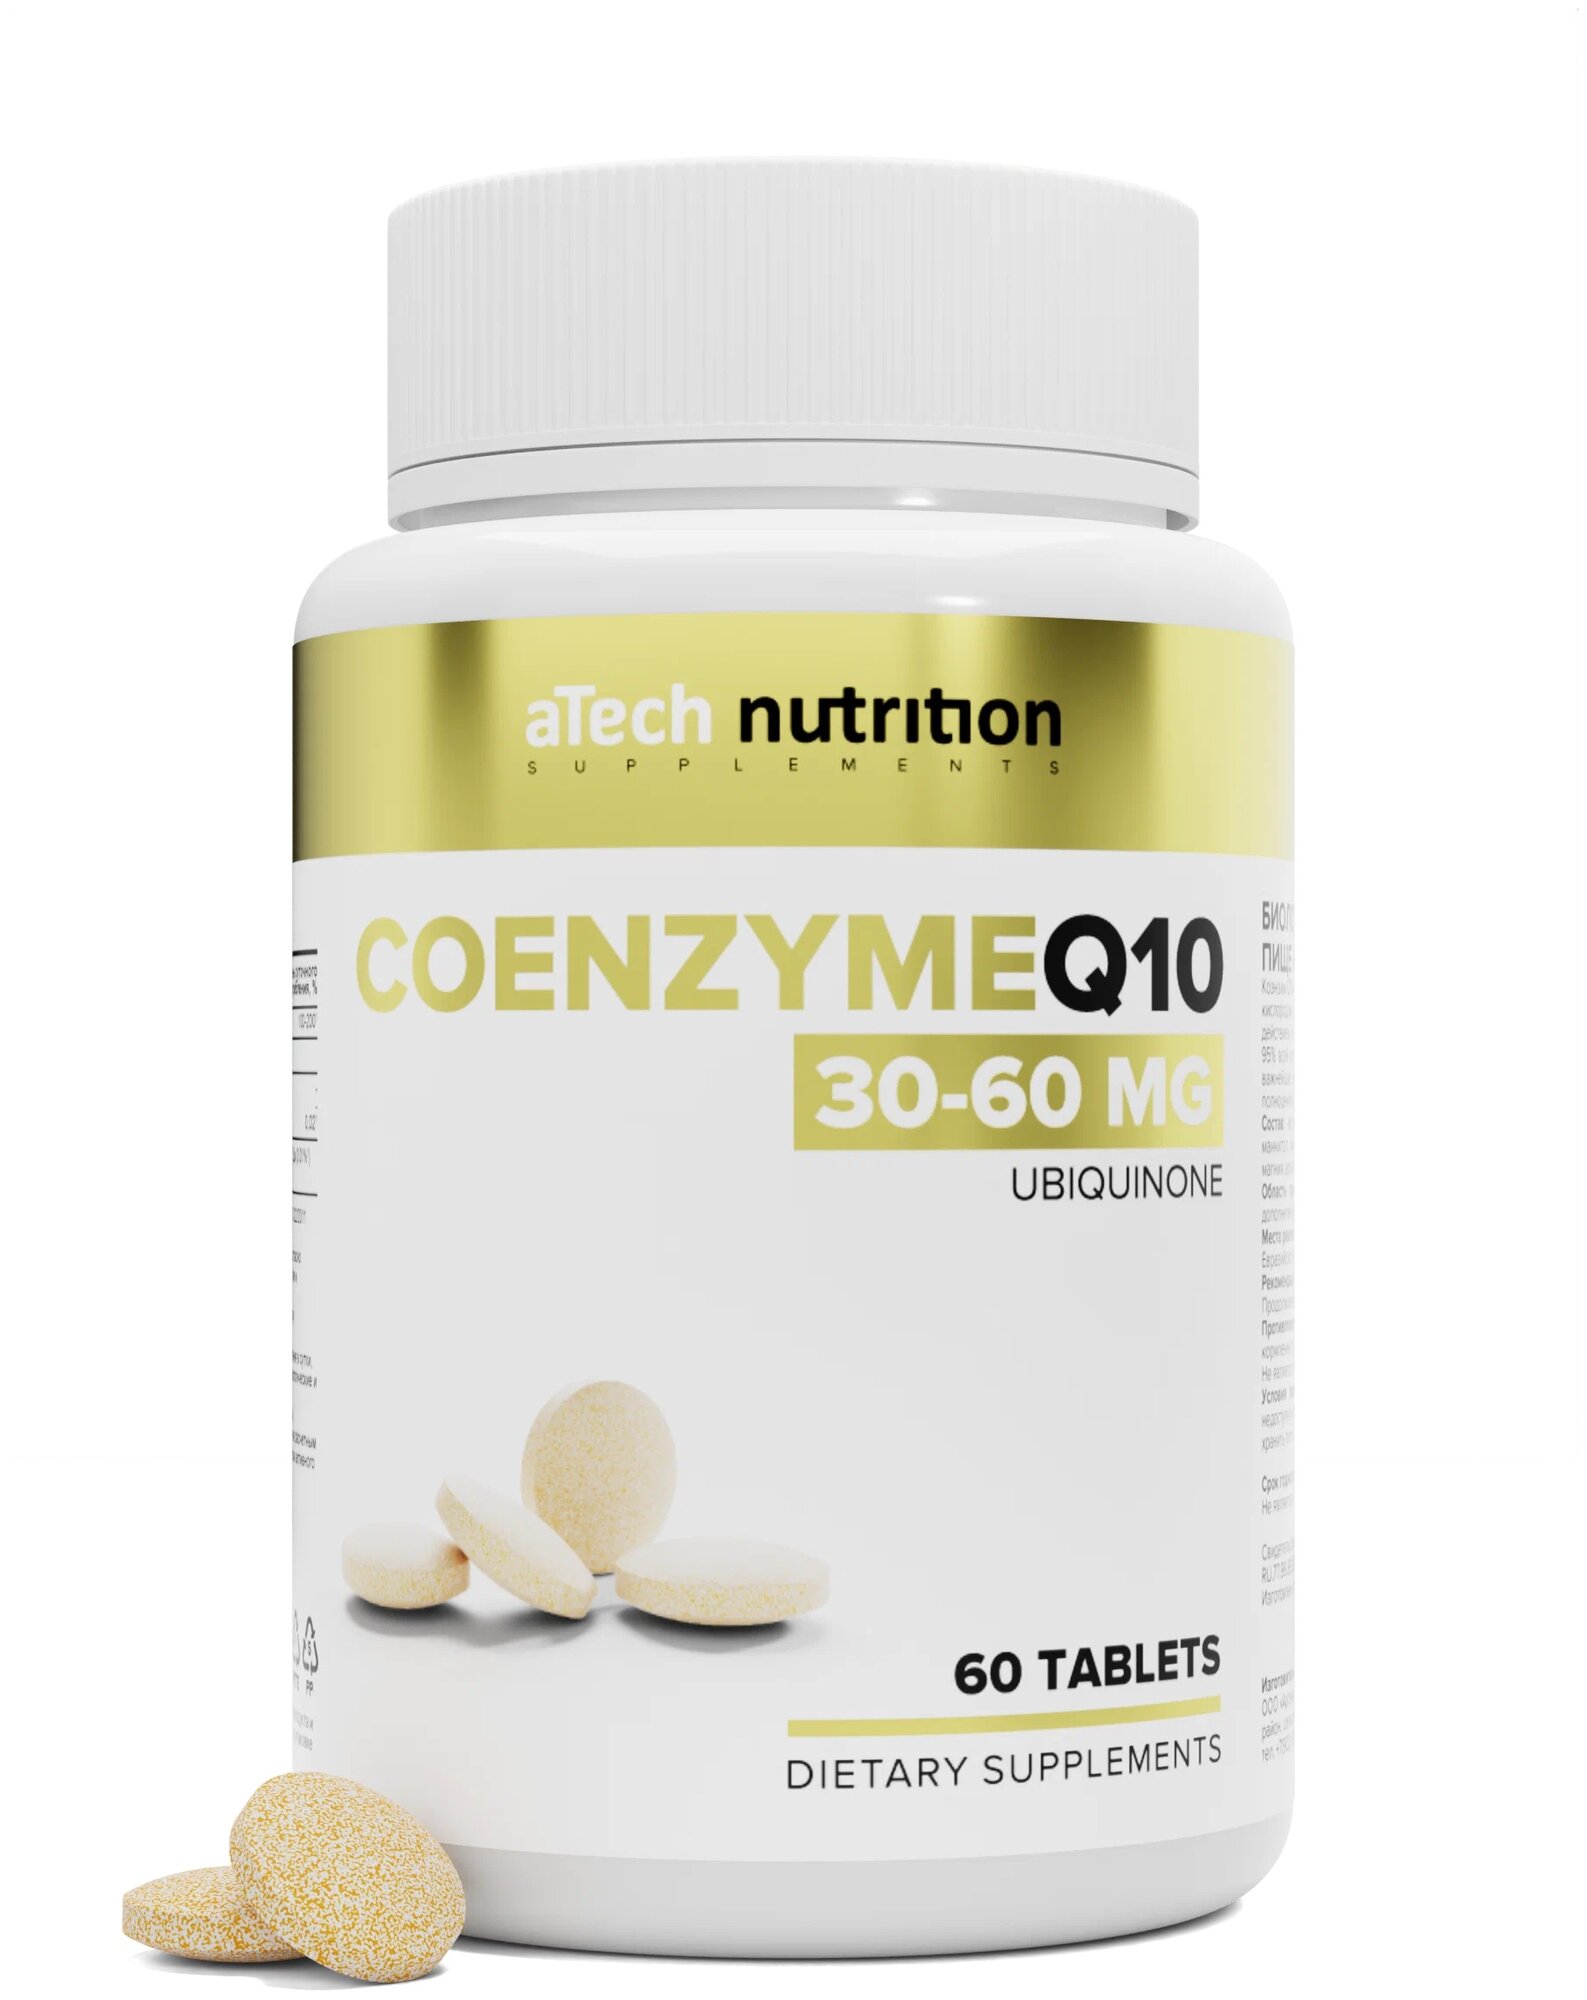 Таблетки aTech Nutrition Coenzyme Q10, 60 шт.